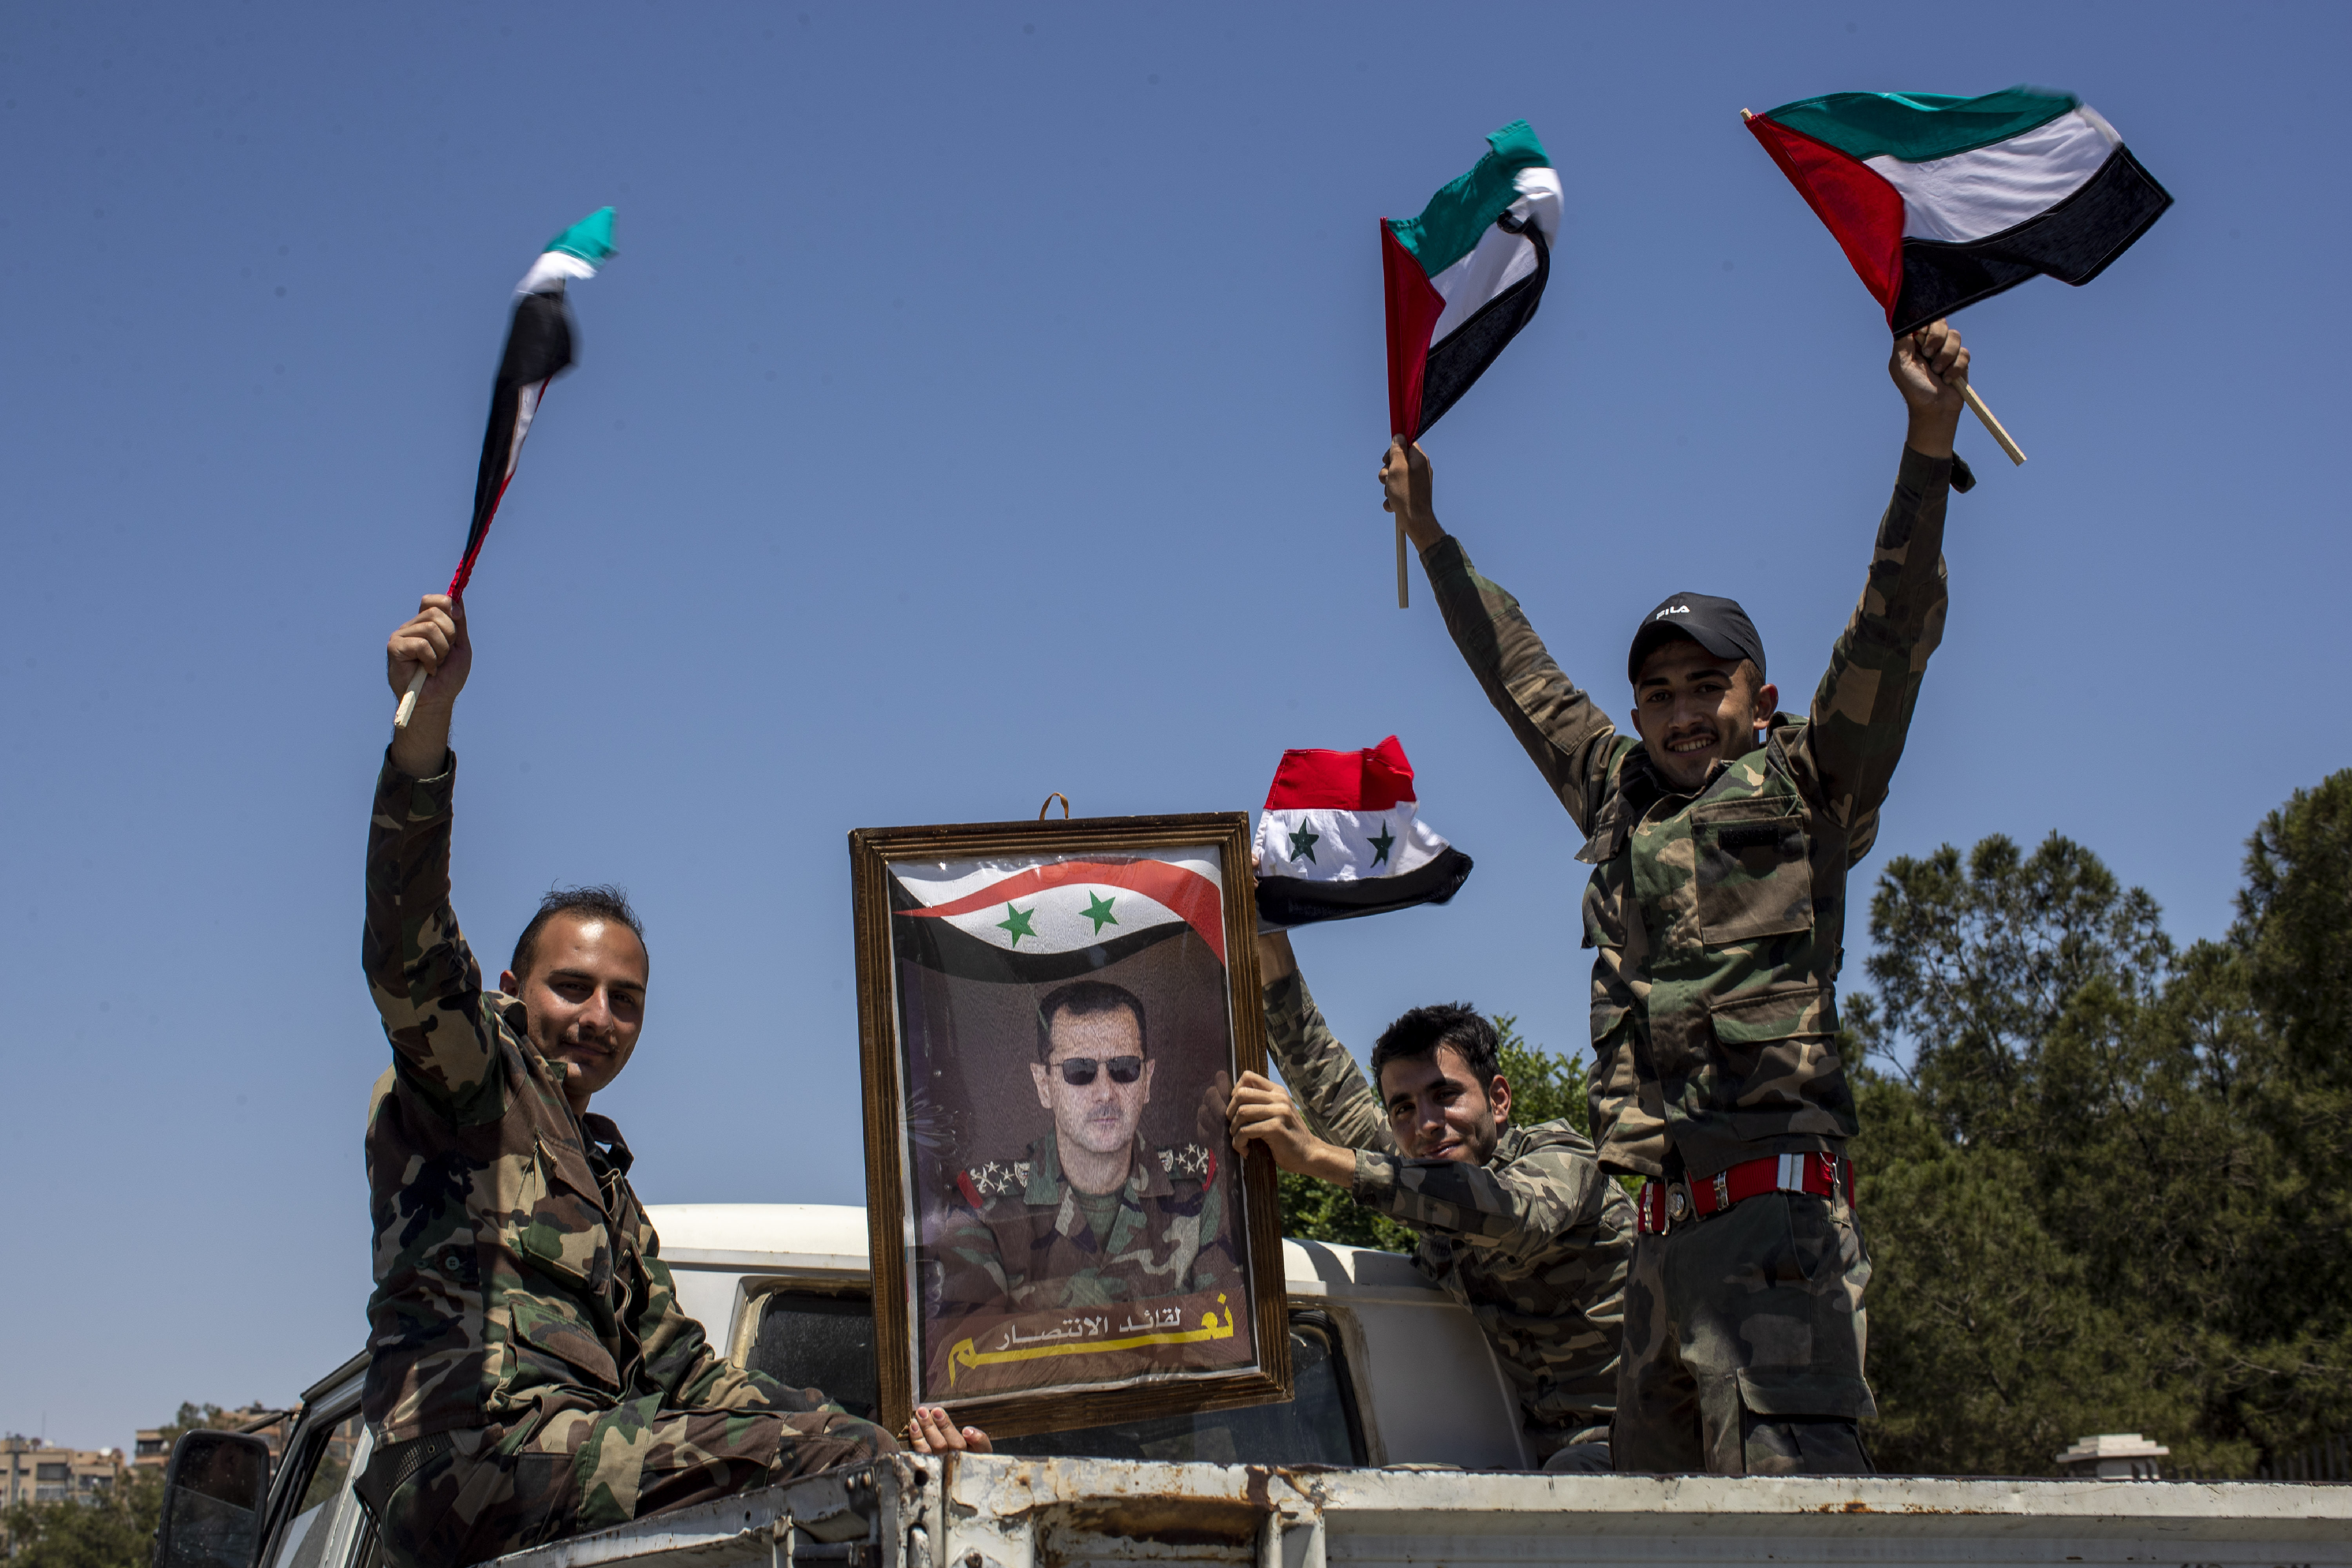 За сирию и башара. Сирия Башар Асад. Башар Асад на фоне флага Сирии.